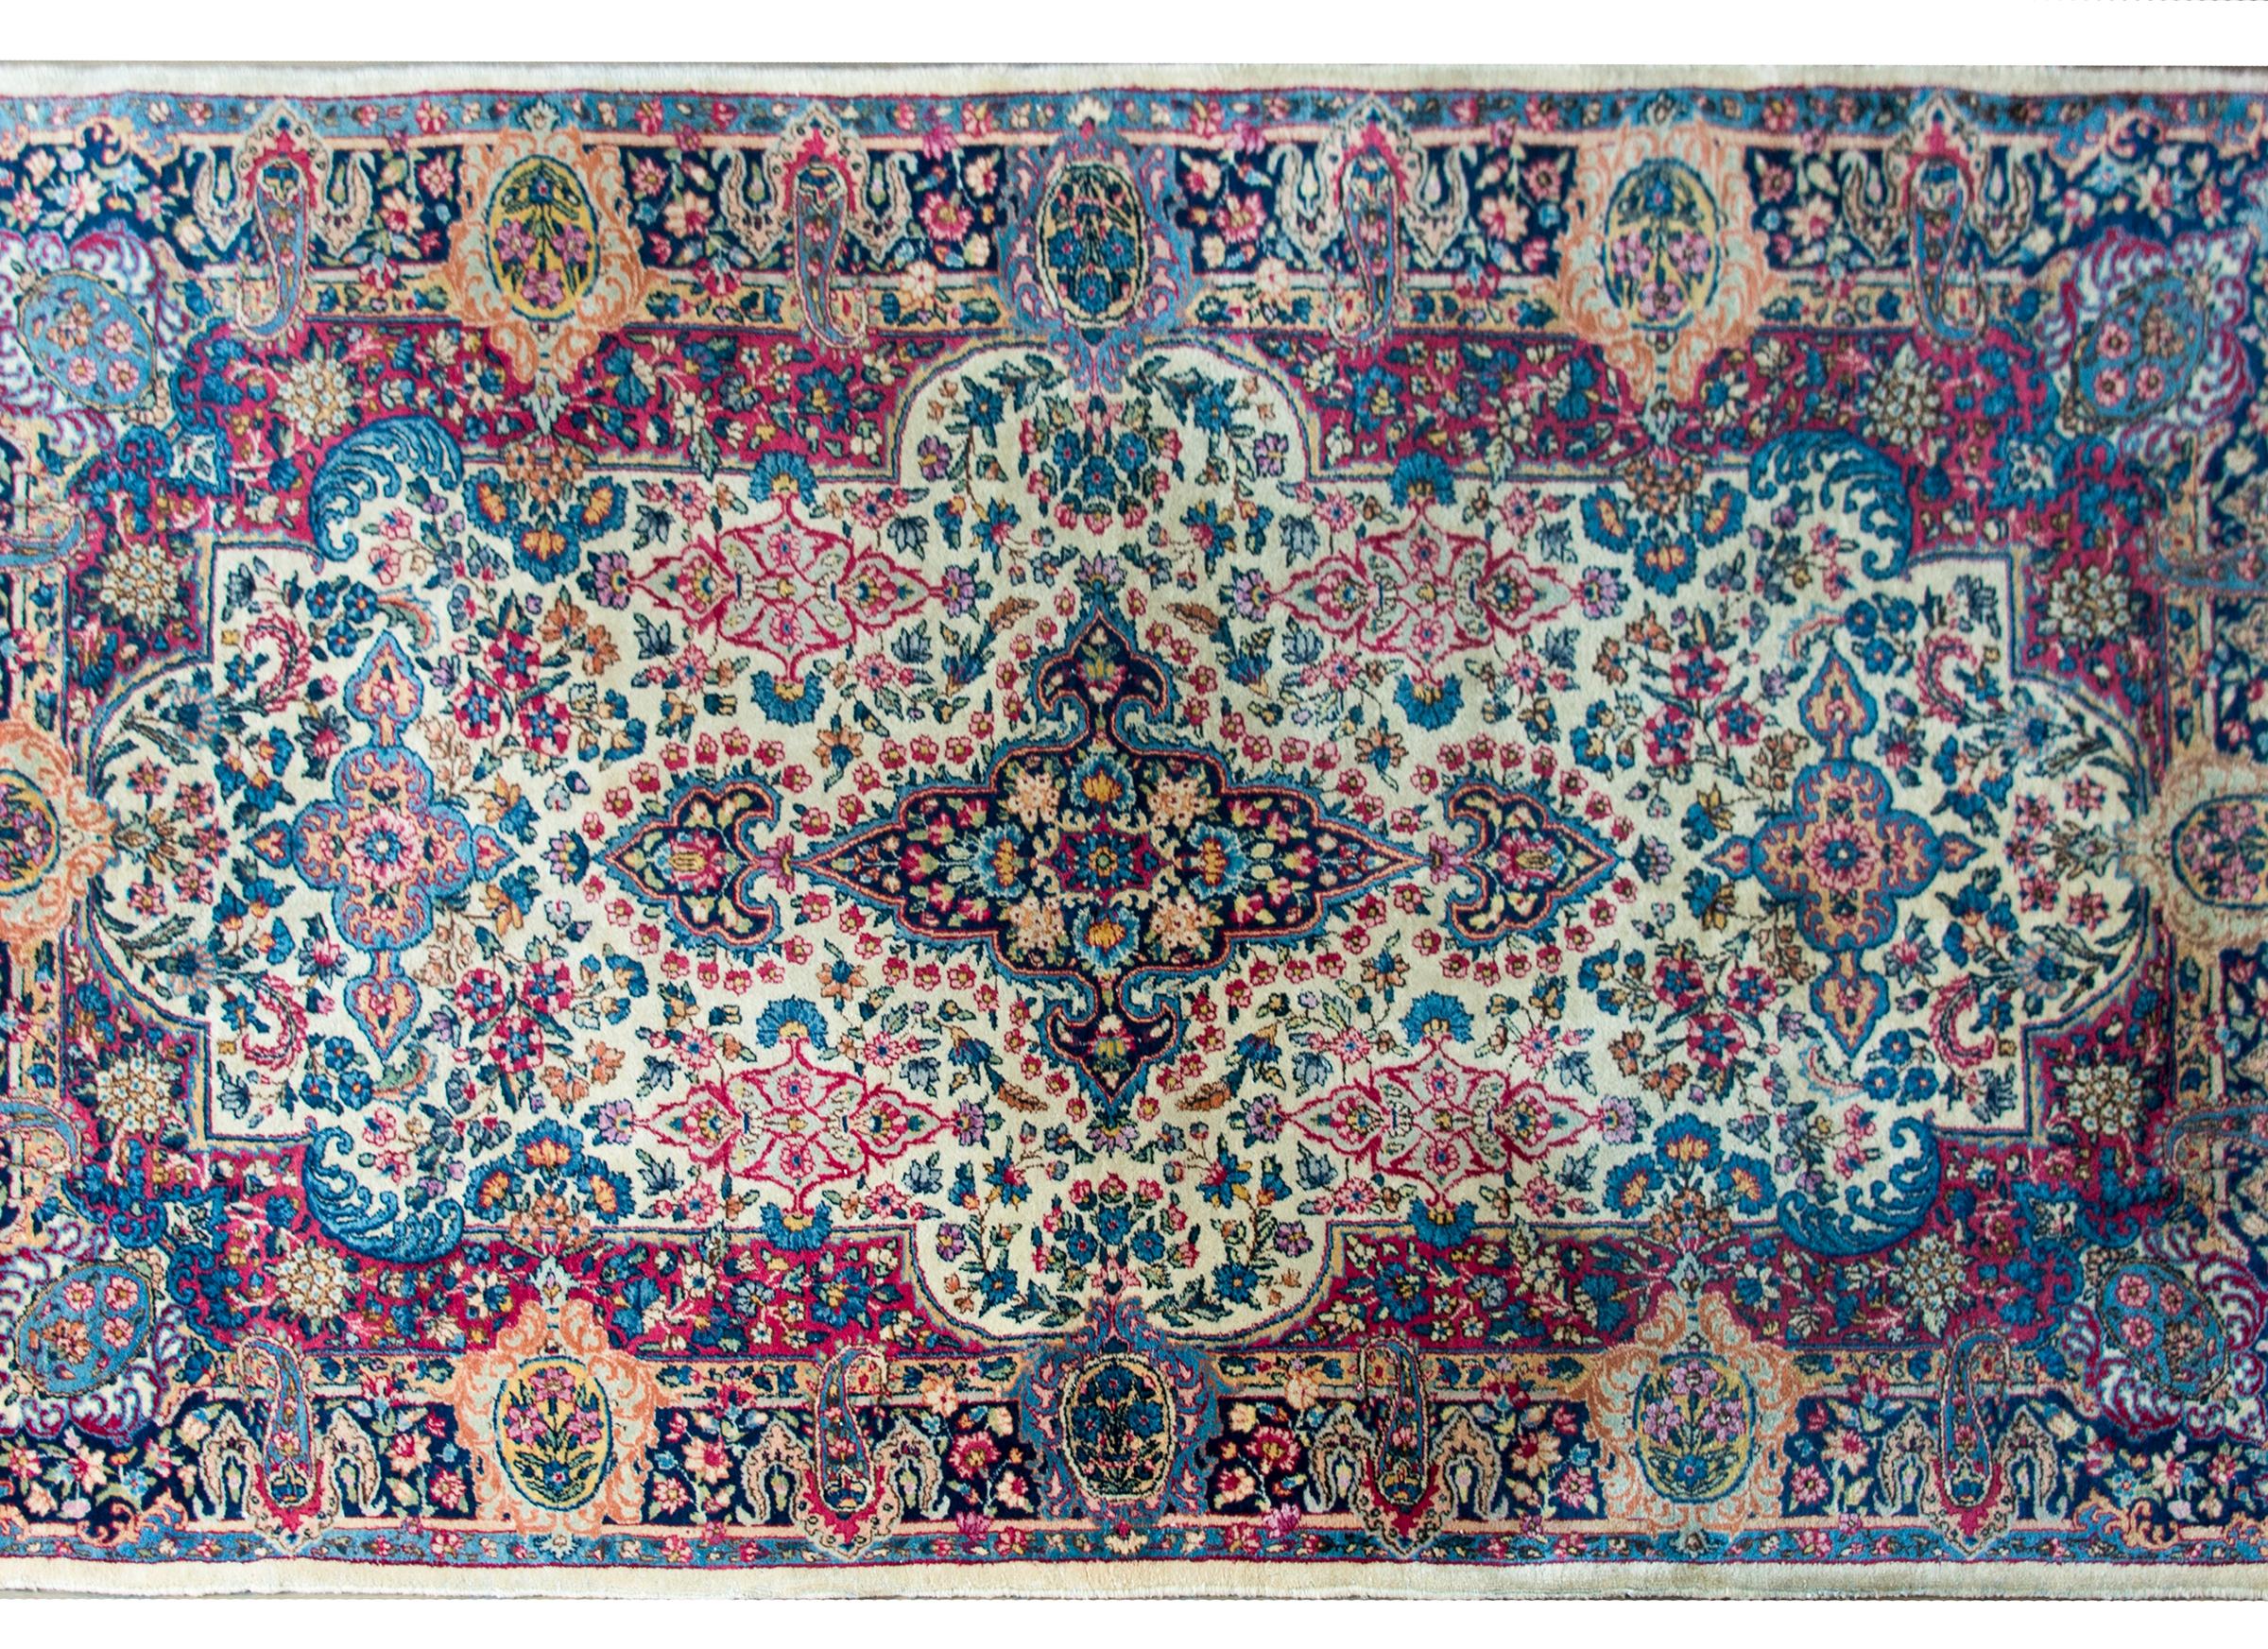 Magnifique tapis persan Kirman du début du 20e siècle avec un motif floral traditionnel en miroir tissé dans des tons roses, indigos, dorés, verts et crèmes brillants, et entouré d'une large bordure avec d'autres motifs floraux.